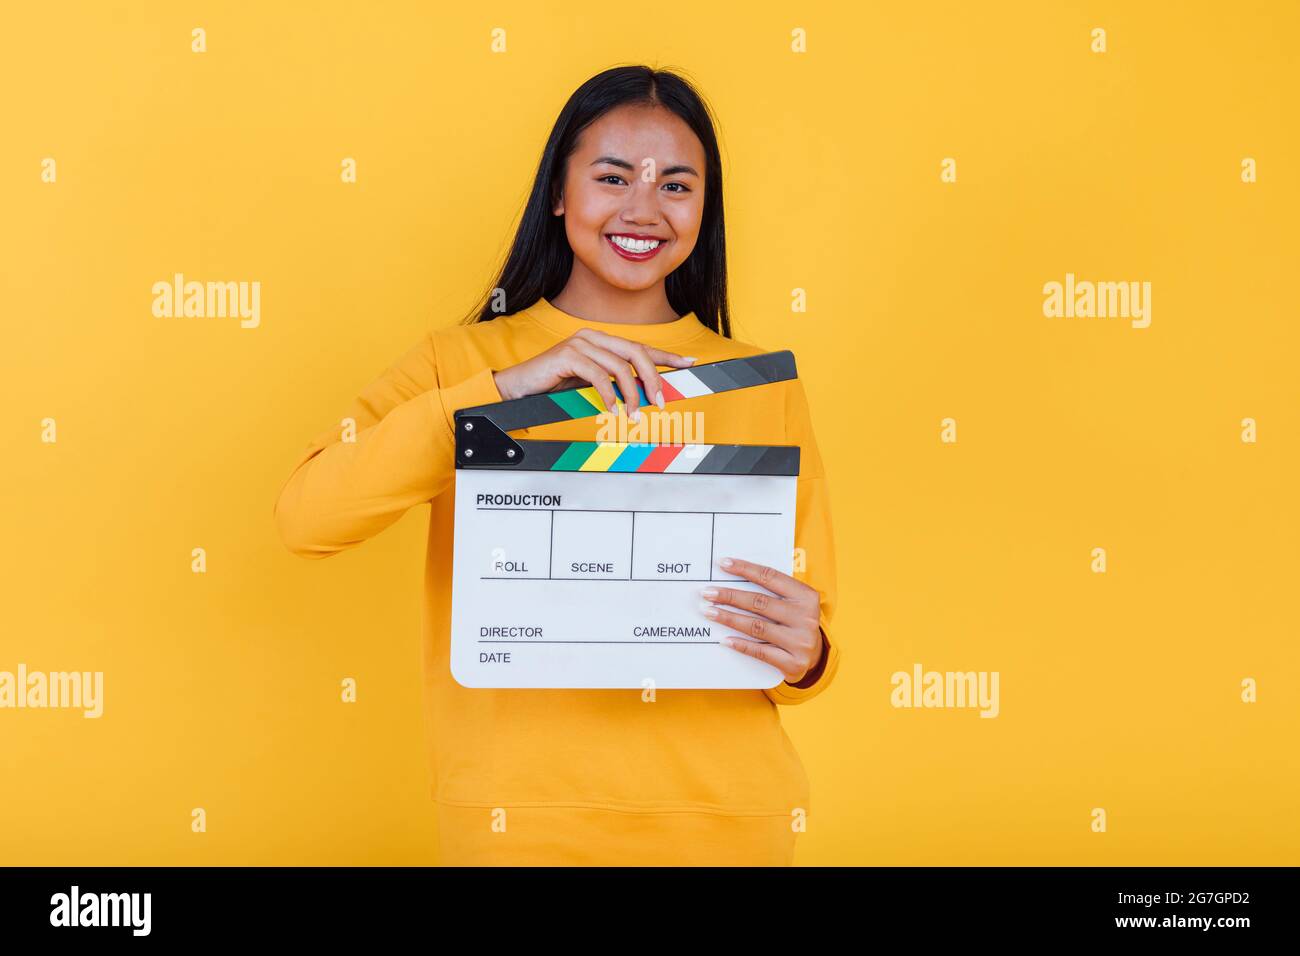 Femme ethnique gaie debout avec le film clapper sur fond jaune en studio et regardant la caméra Banque D'Images